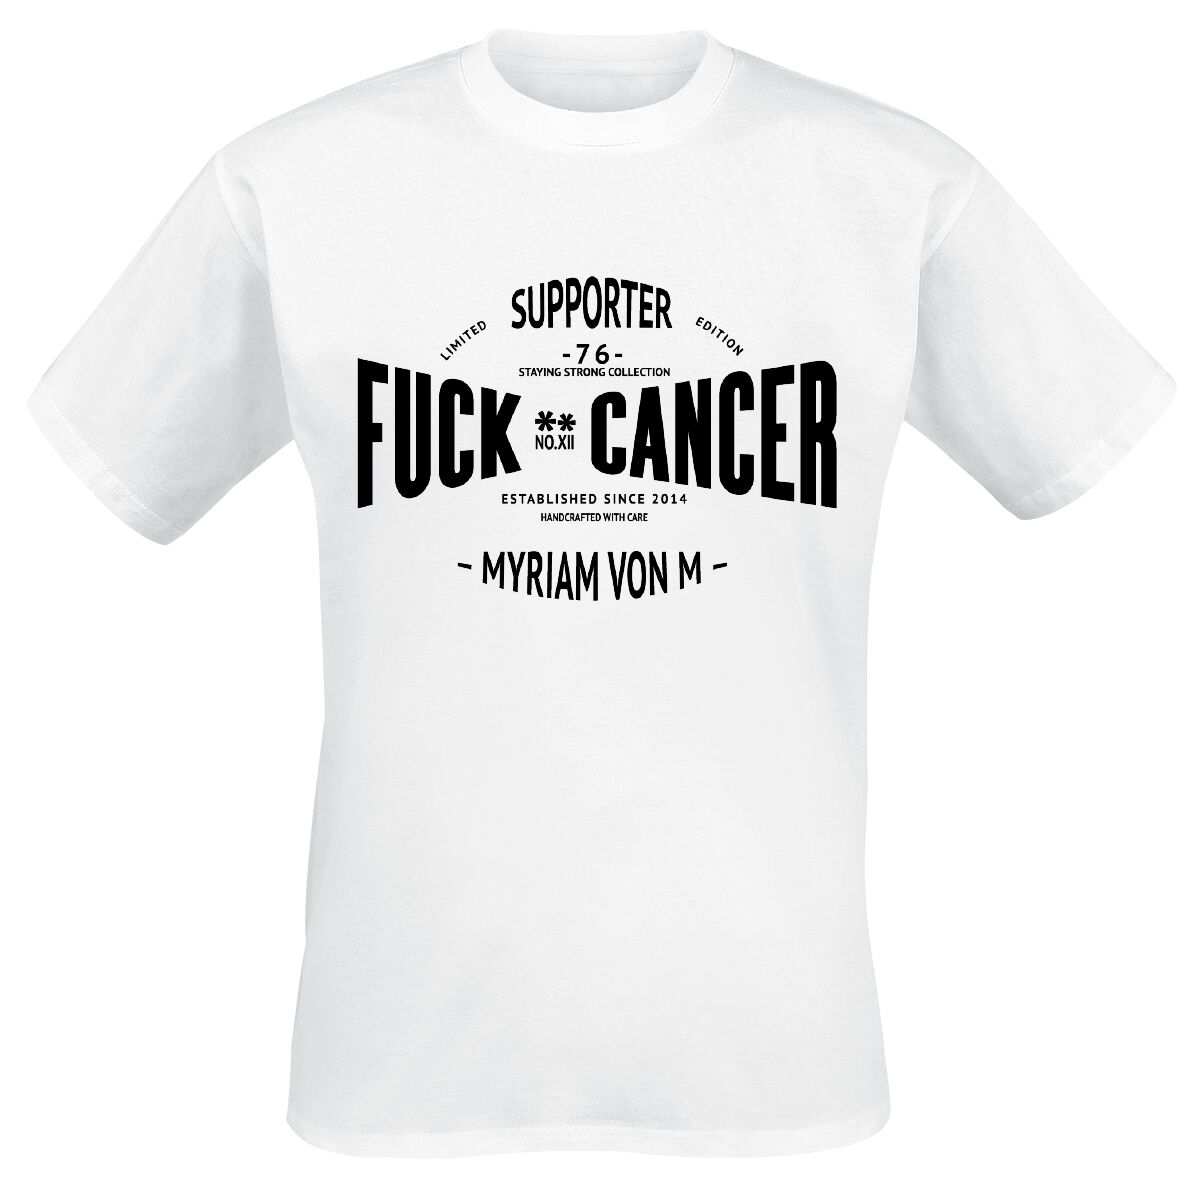 Fuck Cancer by Myriam von M Supporter T-Shirt white